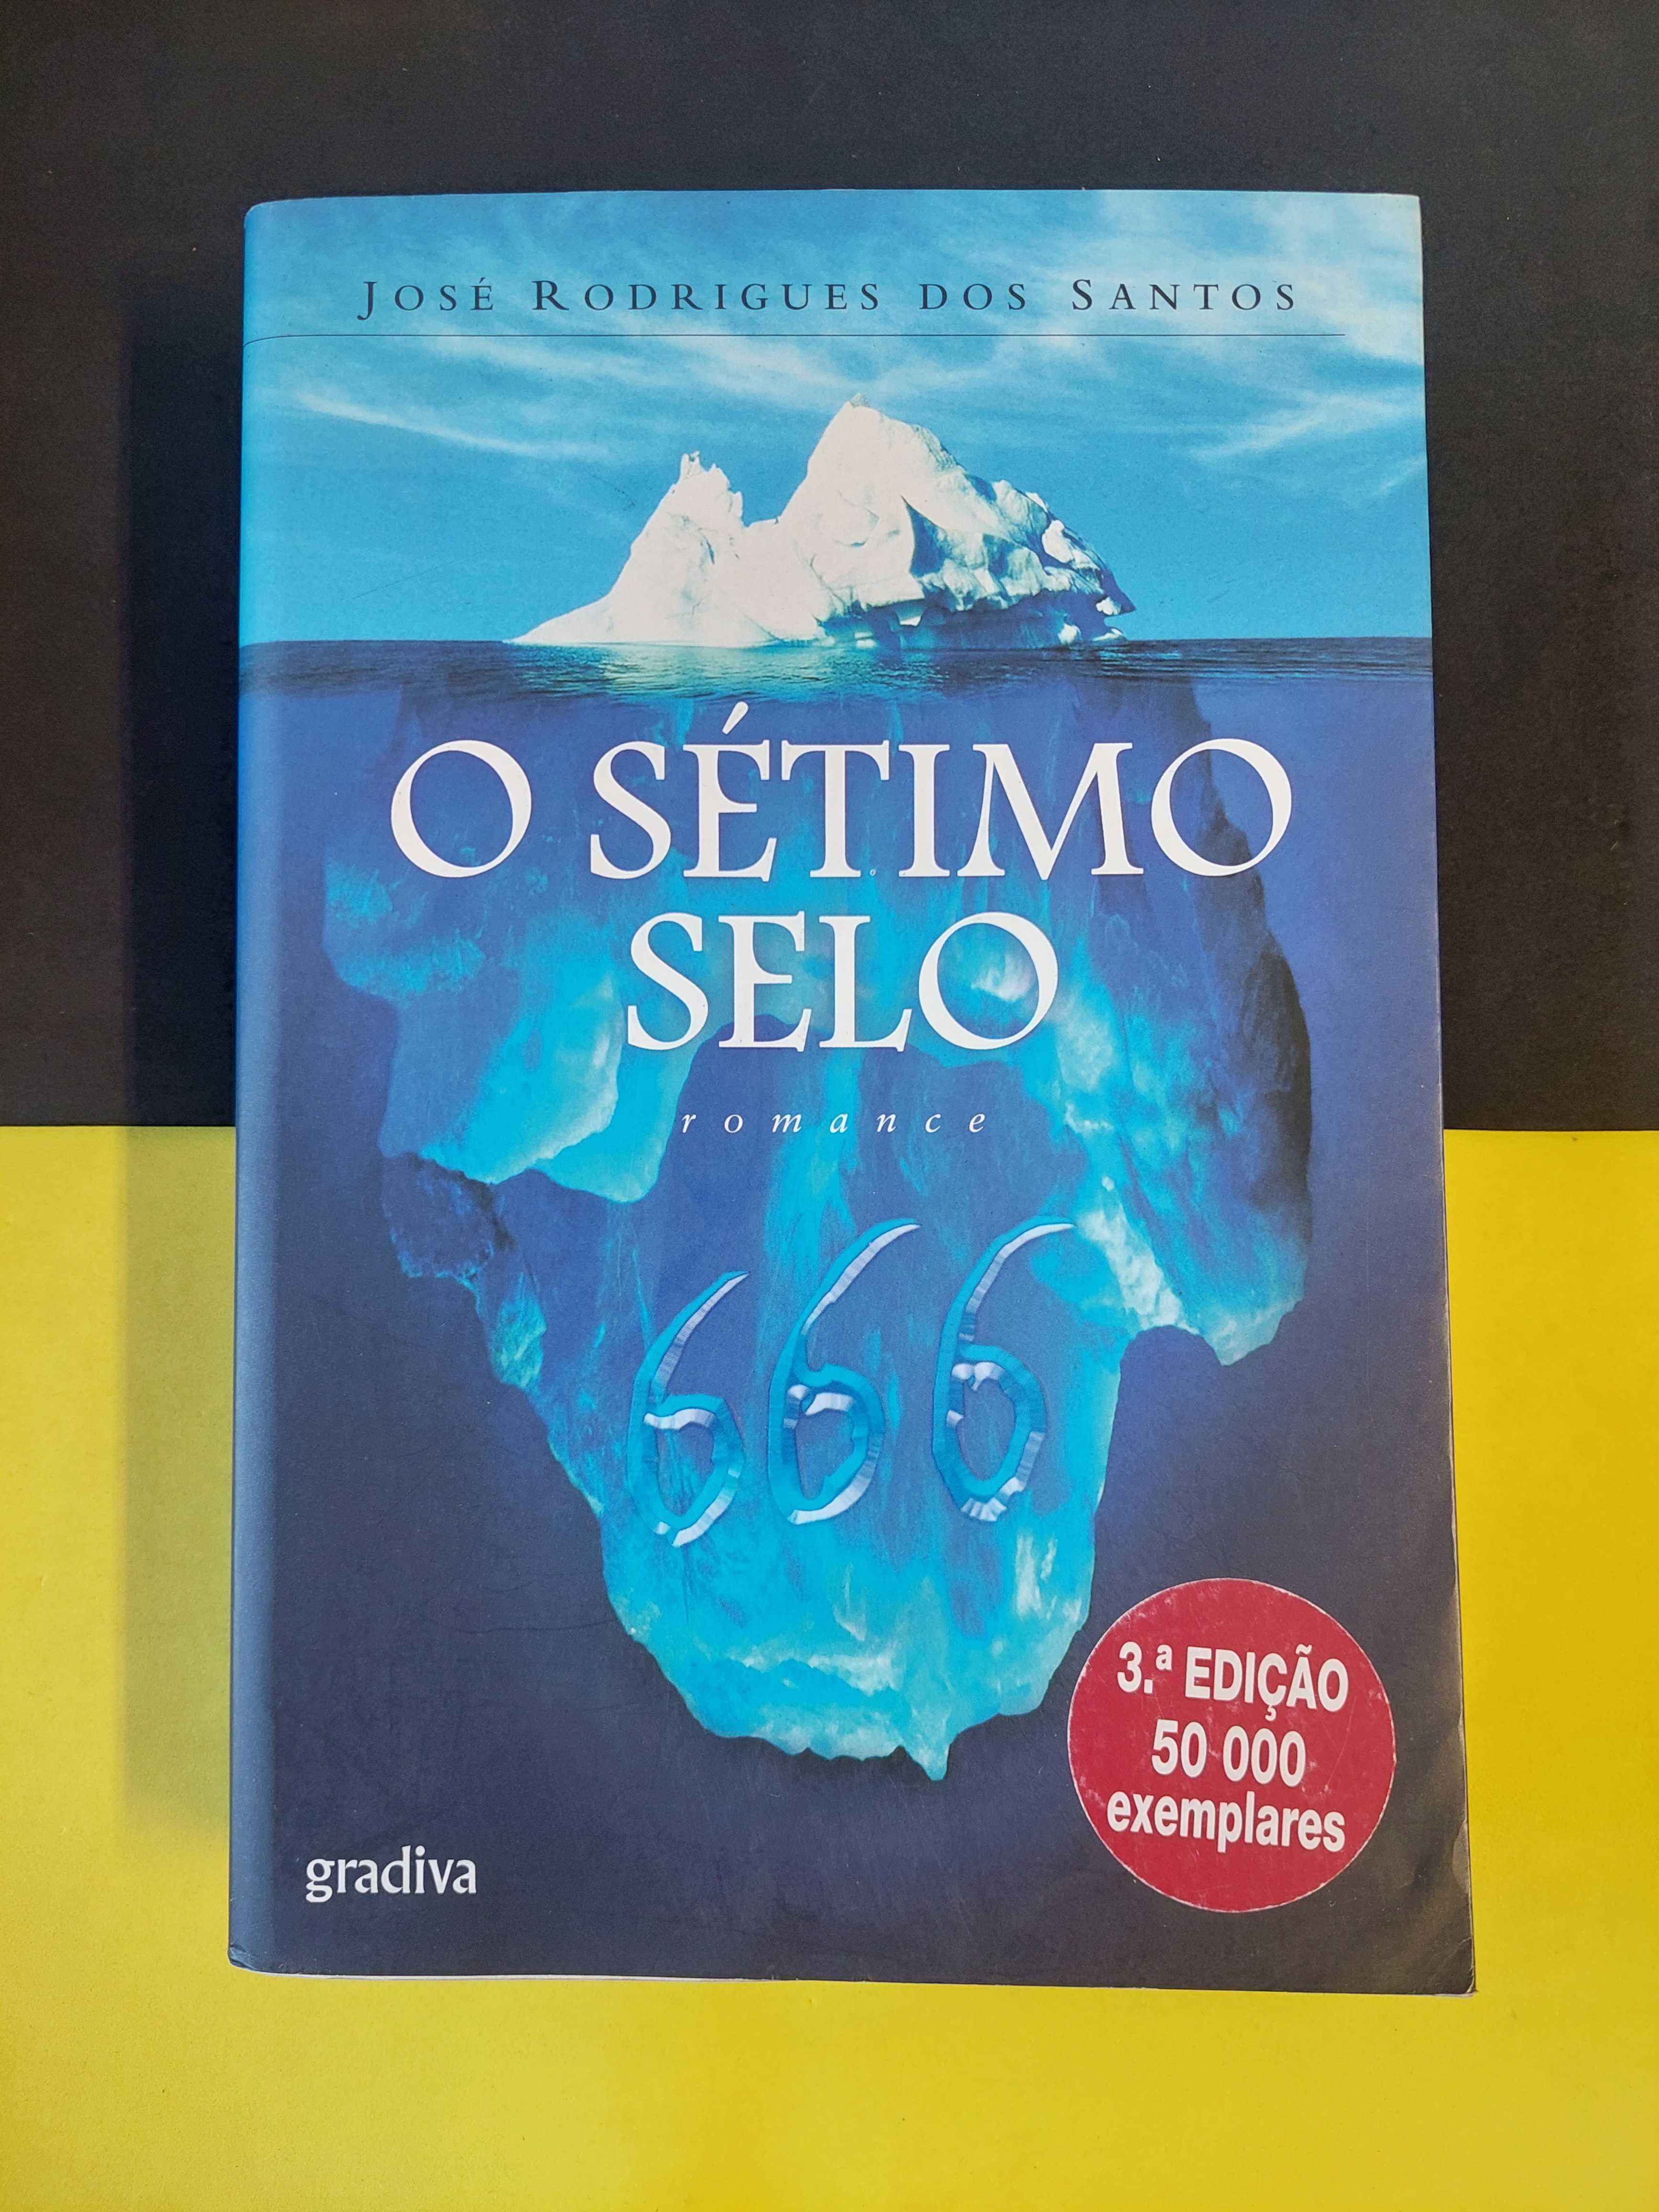 José Rodrigues dos Santos - O sétimo selo, 3ª edição